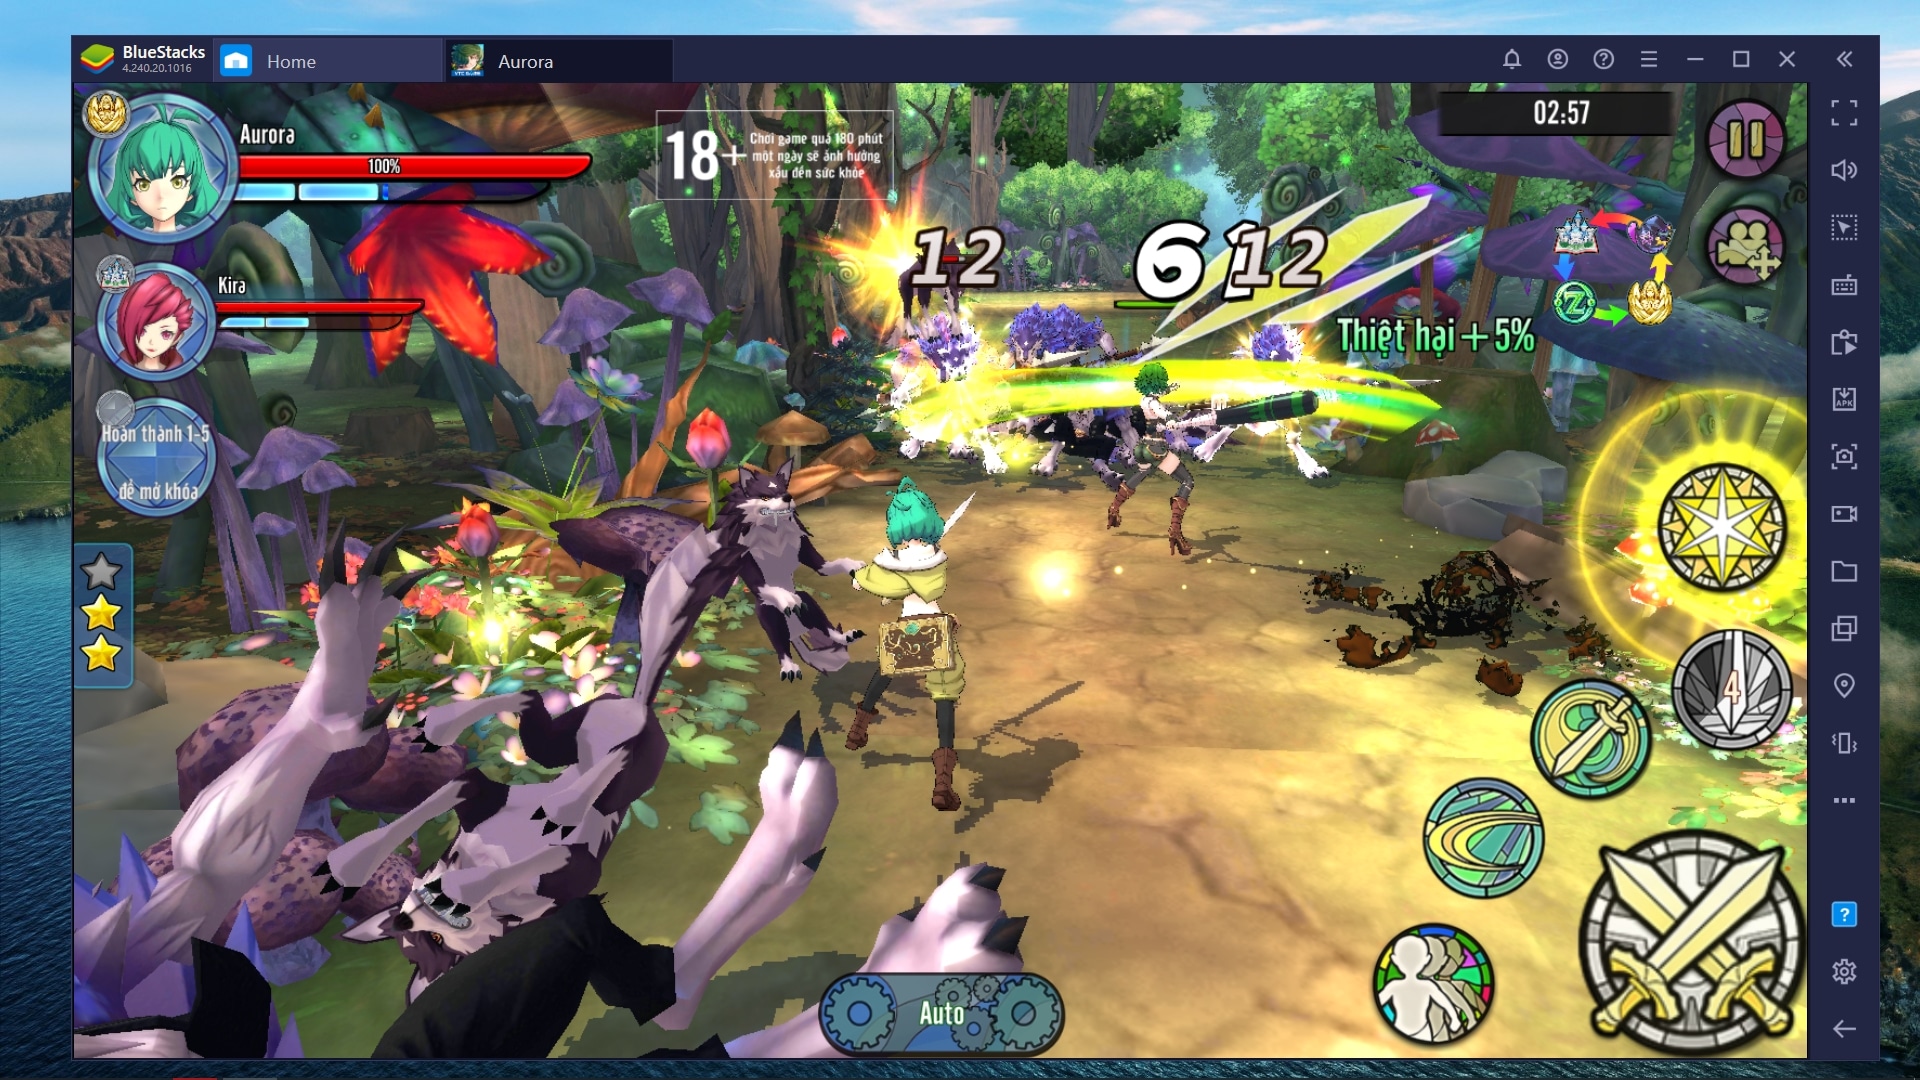 Aurora - Vùng Đất Huyền Thoại, tựa game mobile RPG chặt chém cực đã khi chơi trên phần mềm BlueStacks